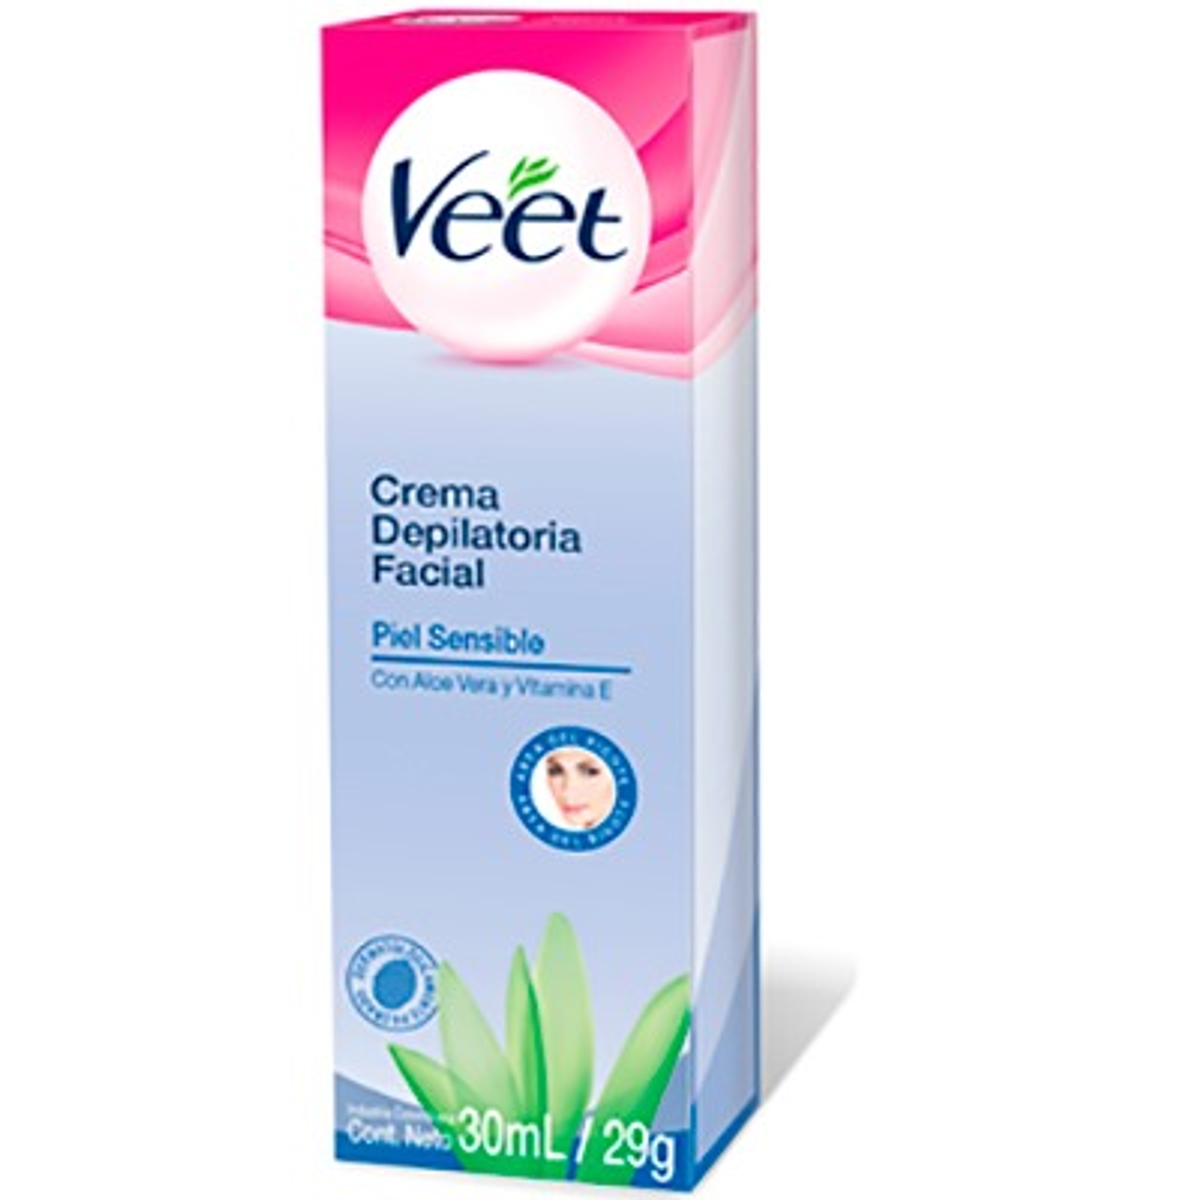 Veet Crema depilatoria Facial Piel sensible 30 ml